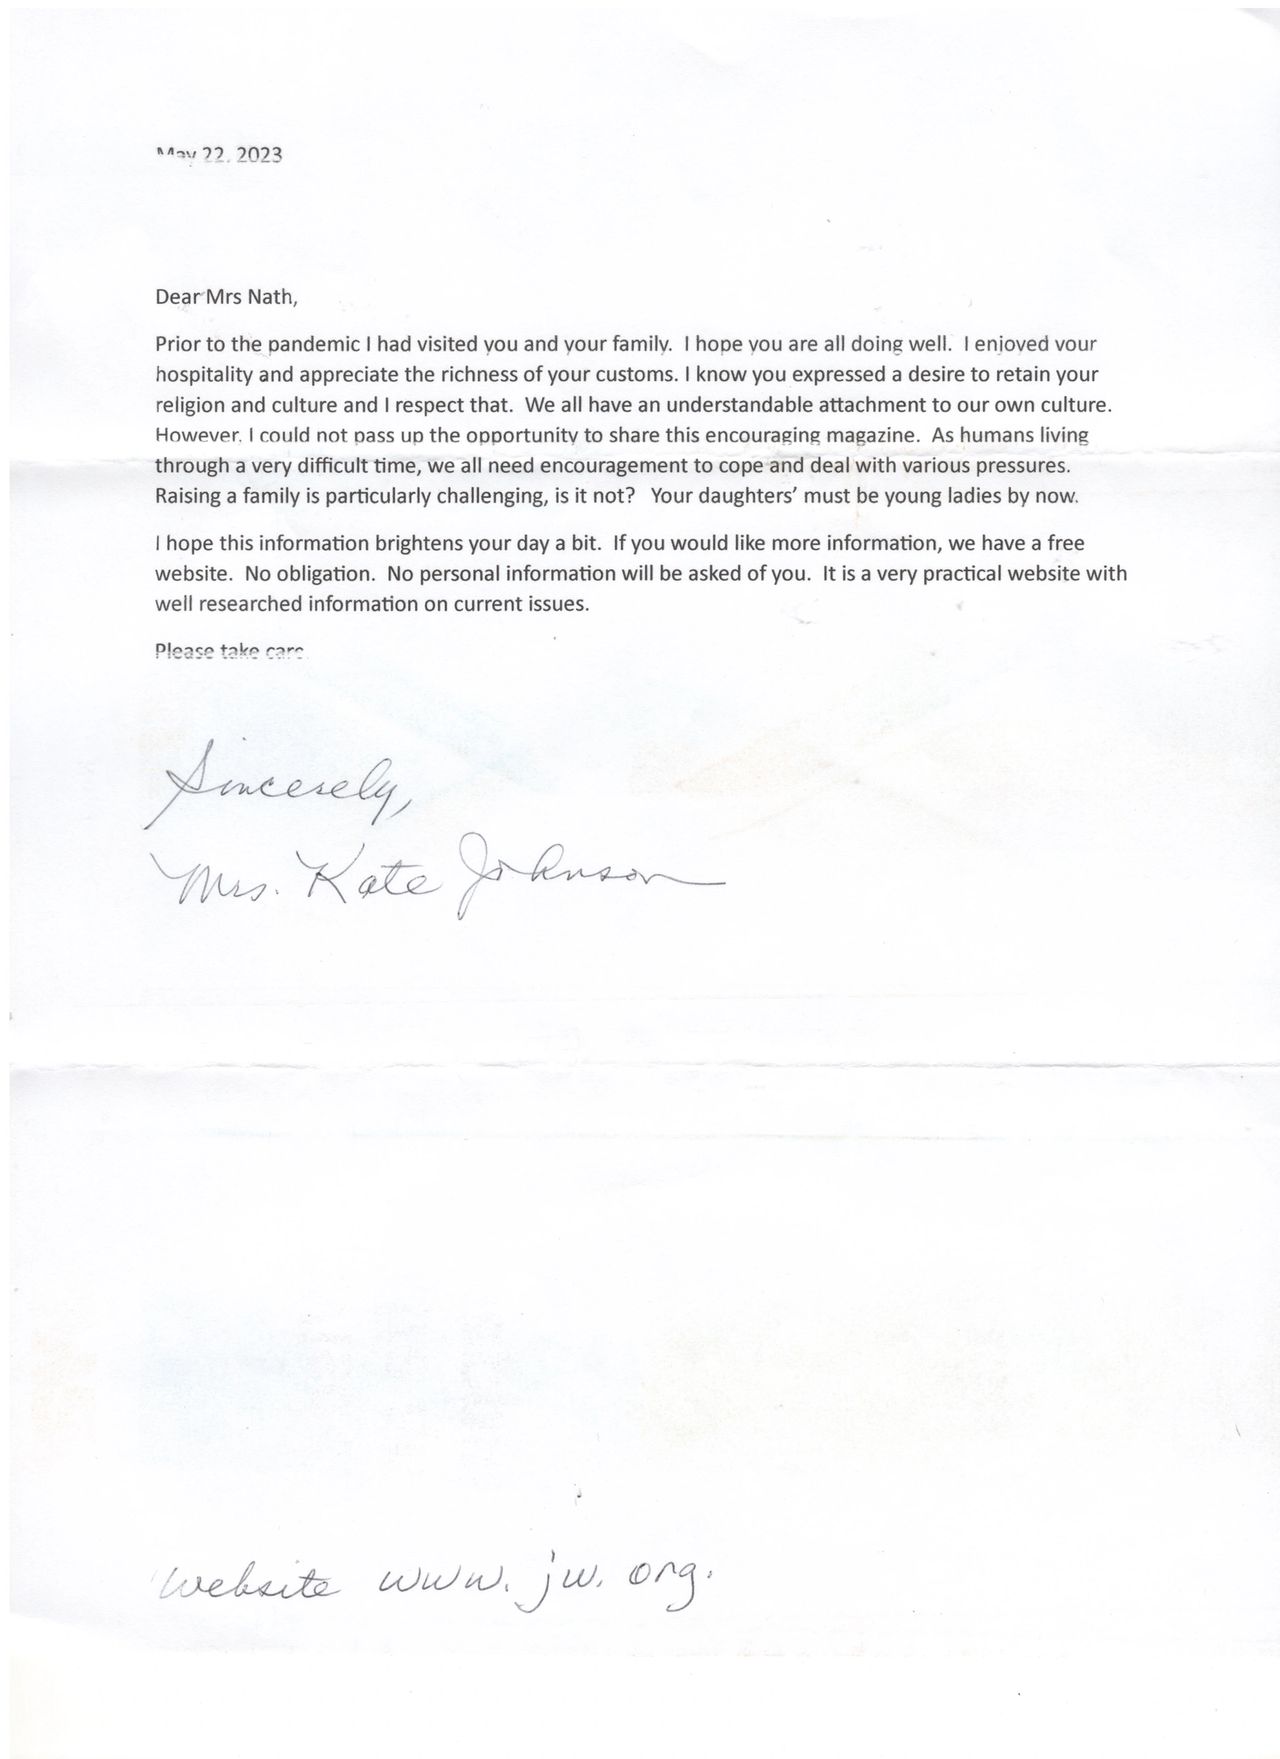 Letter from Kate Johnson